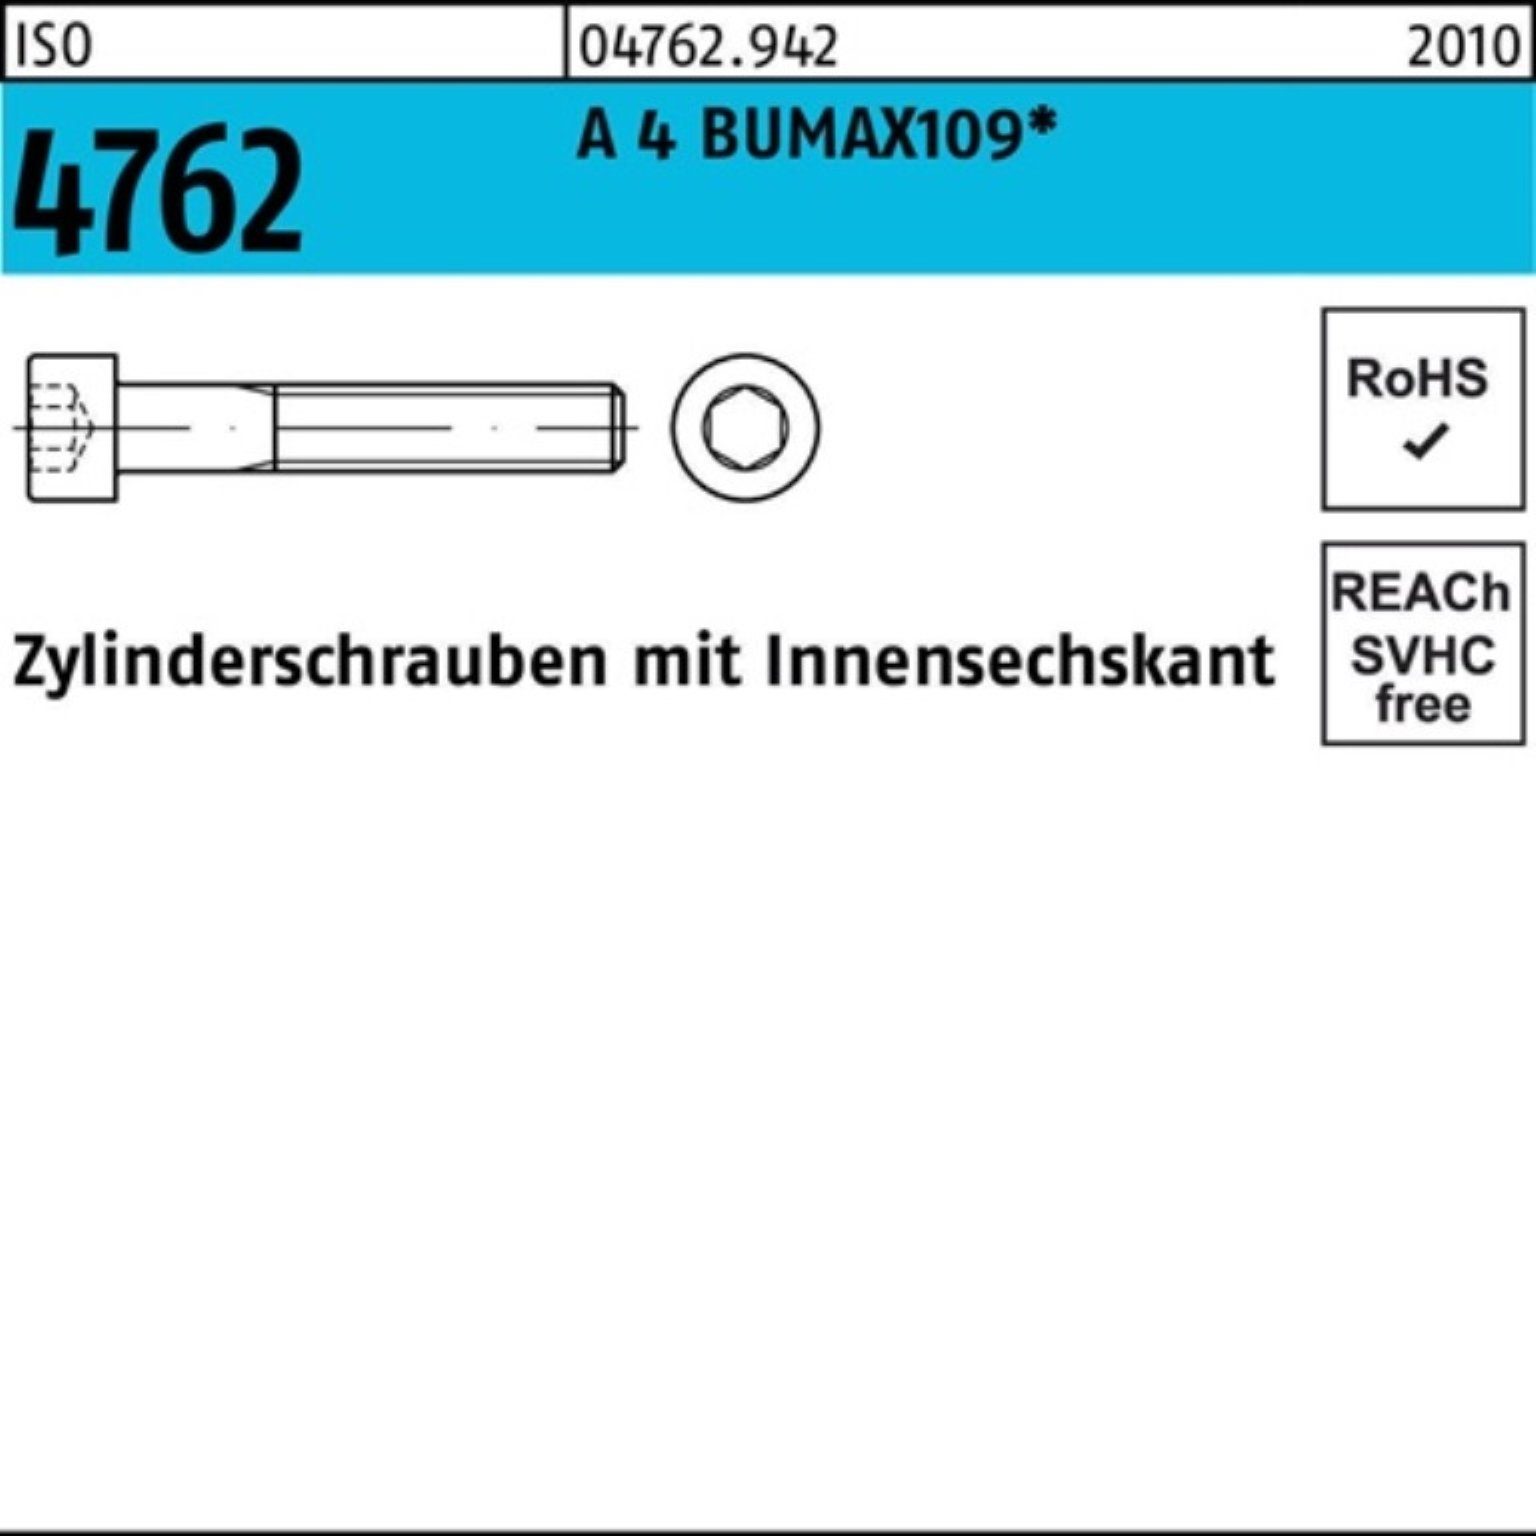 Bufab Zylinderschraube 100er Pack Zylinderschraube ISO 4762 Innen-6kt M6x 30 A 4 BUMAX109 100 | Schrauben